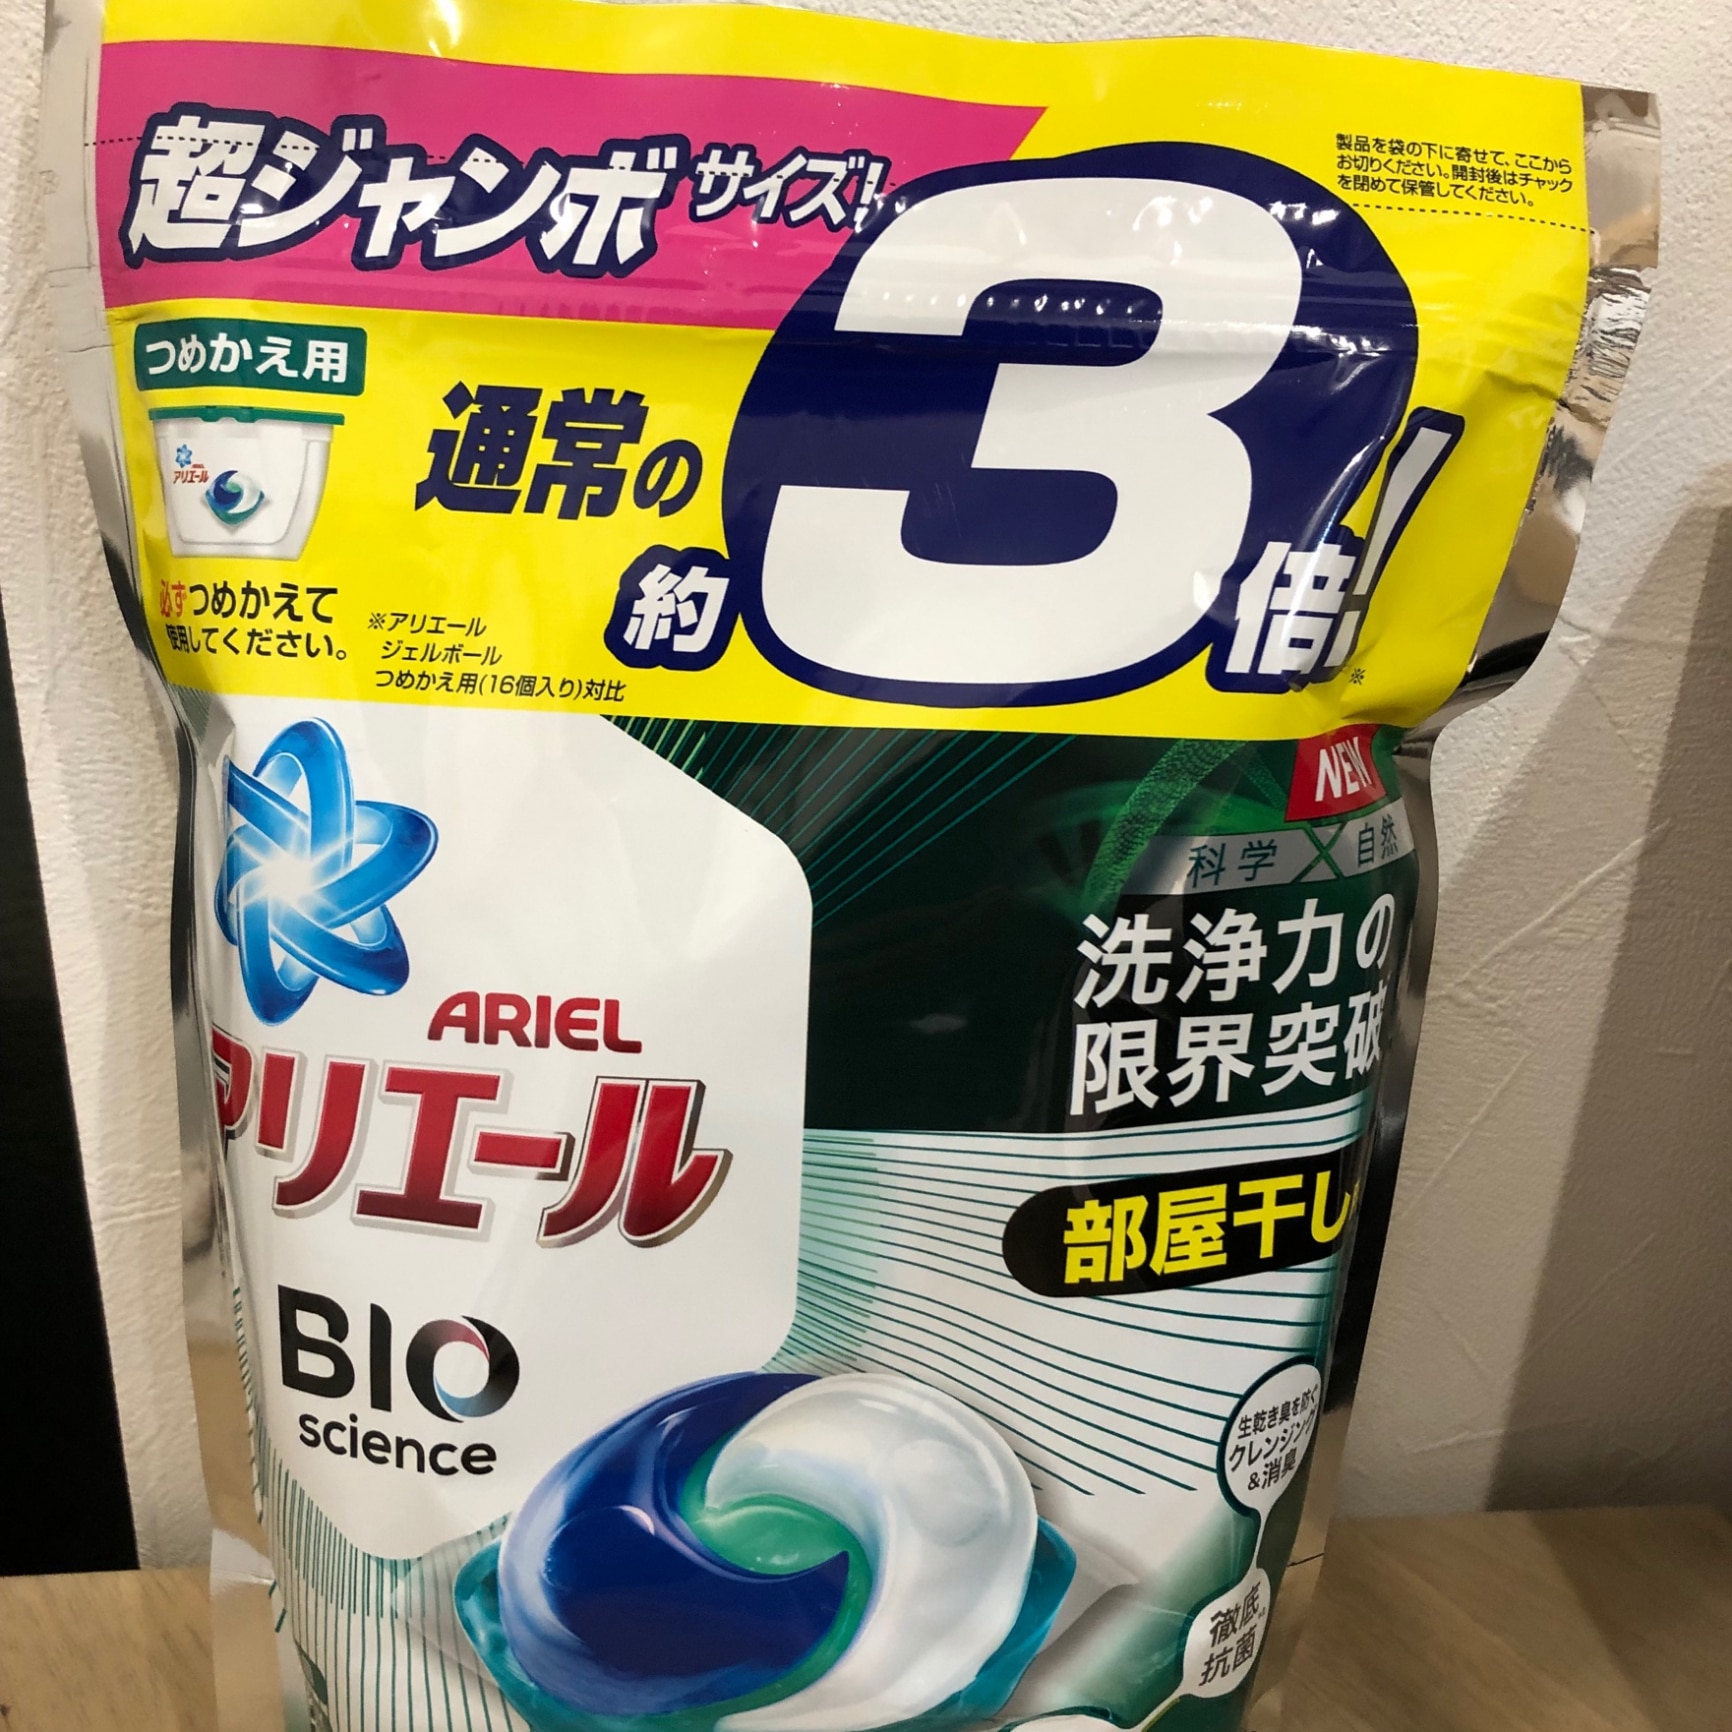 アリエール Bioscience 炭酸 4D 部屋干し用 ジェルボール×30個 - 洗濯洗剤